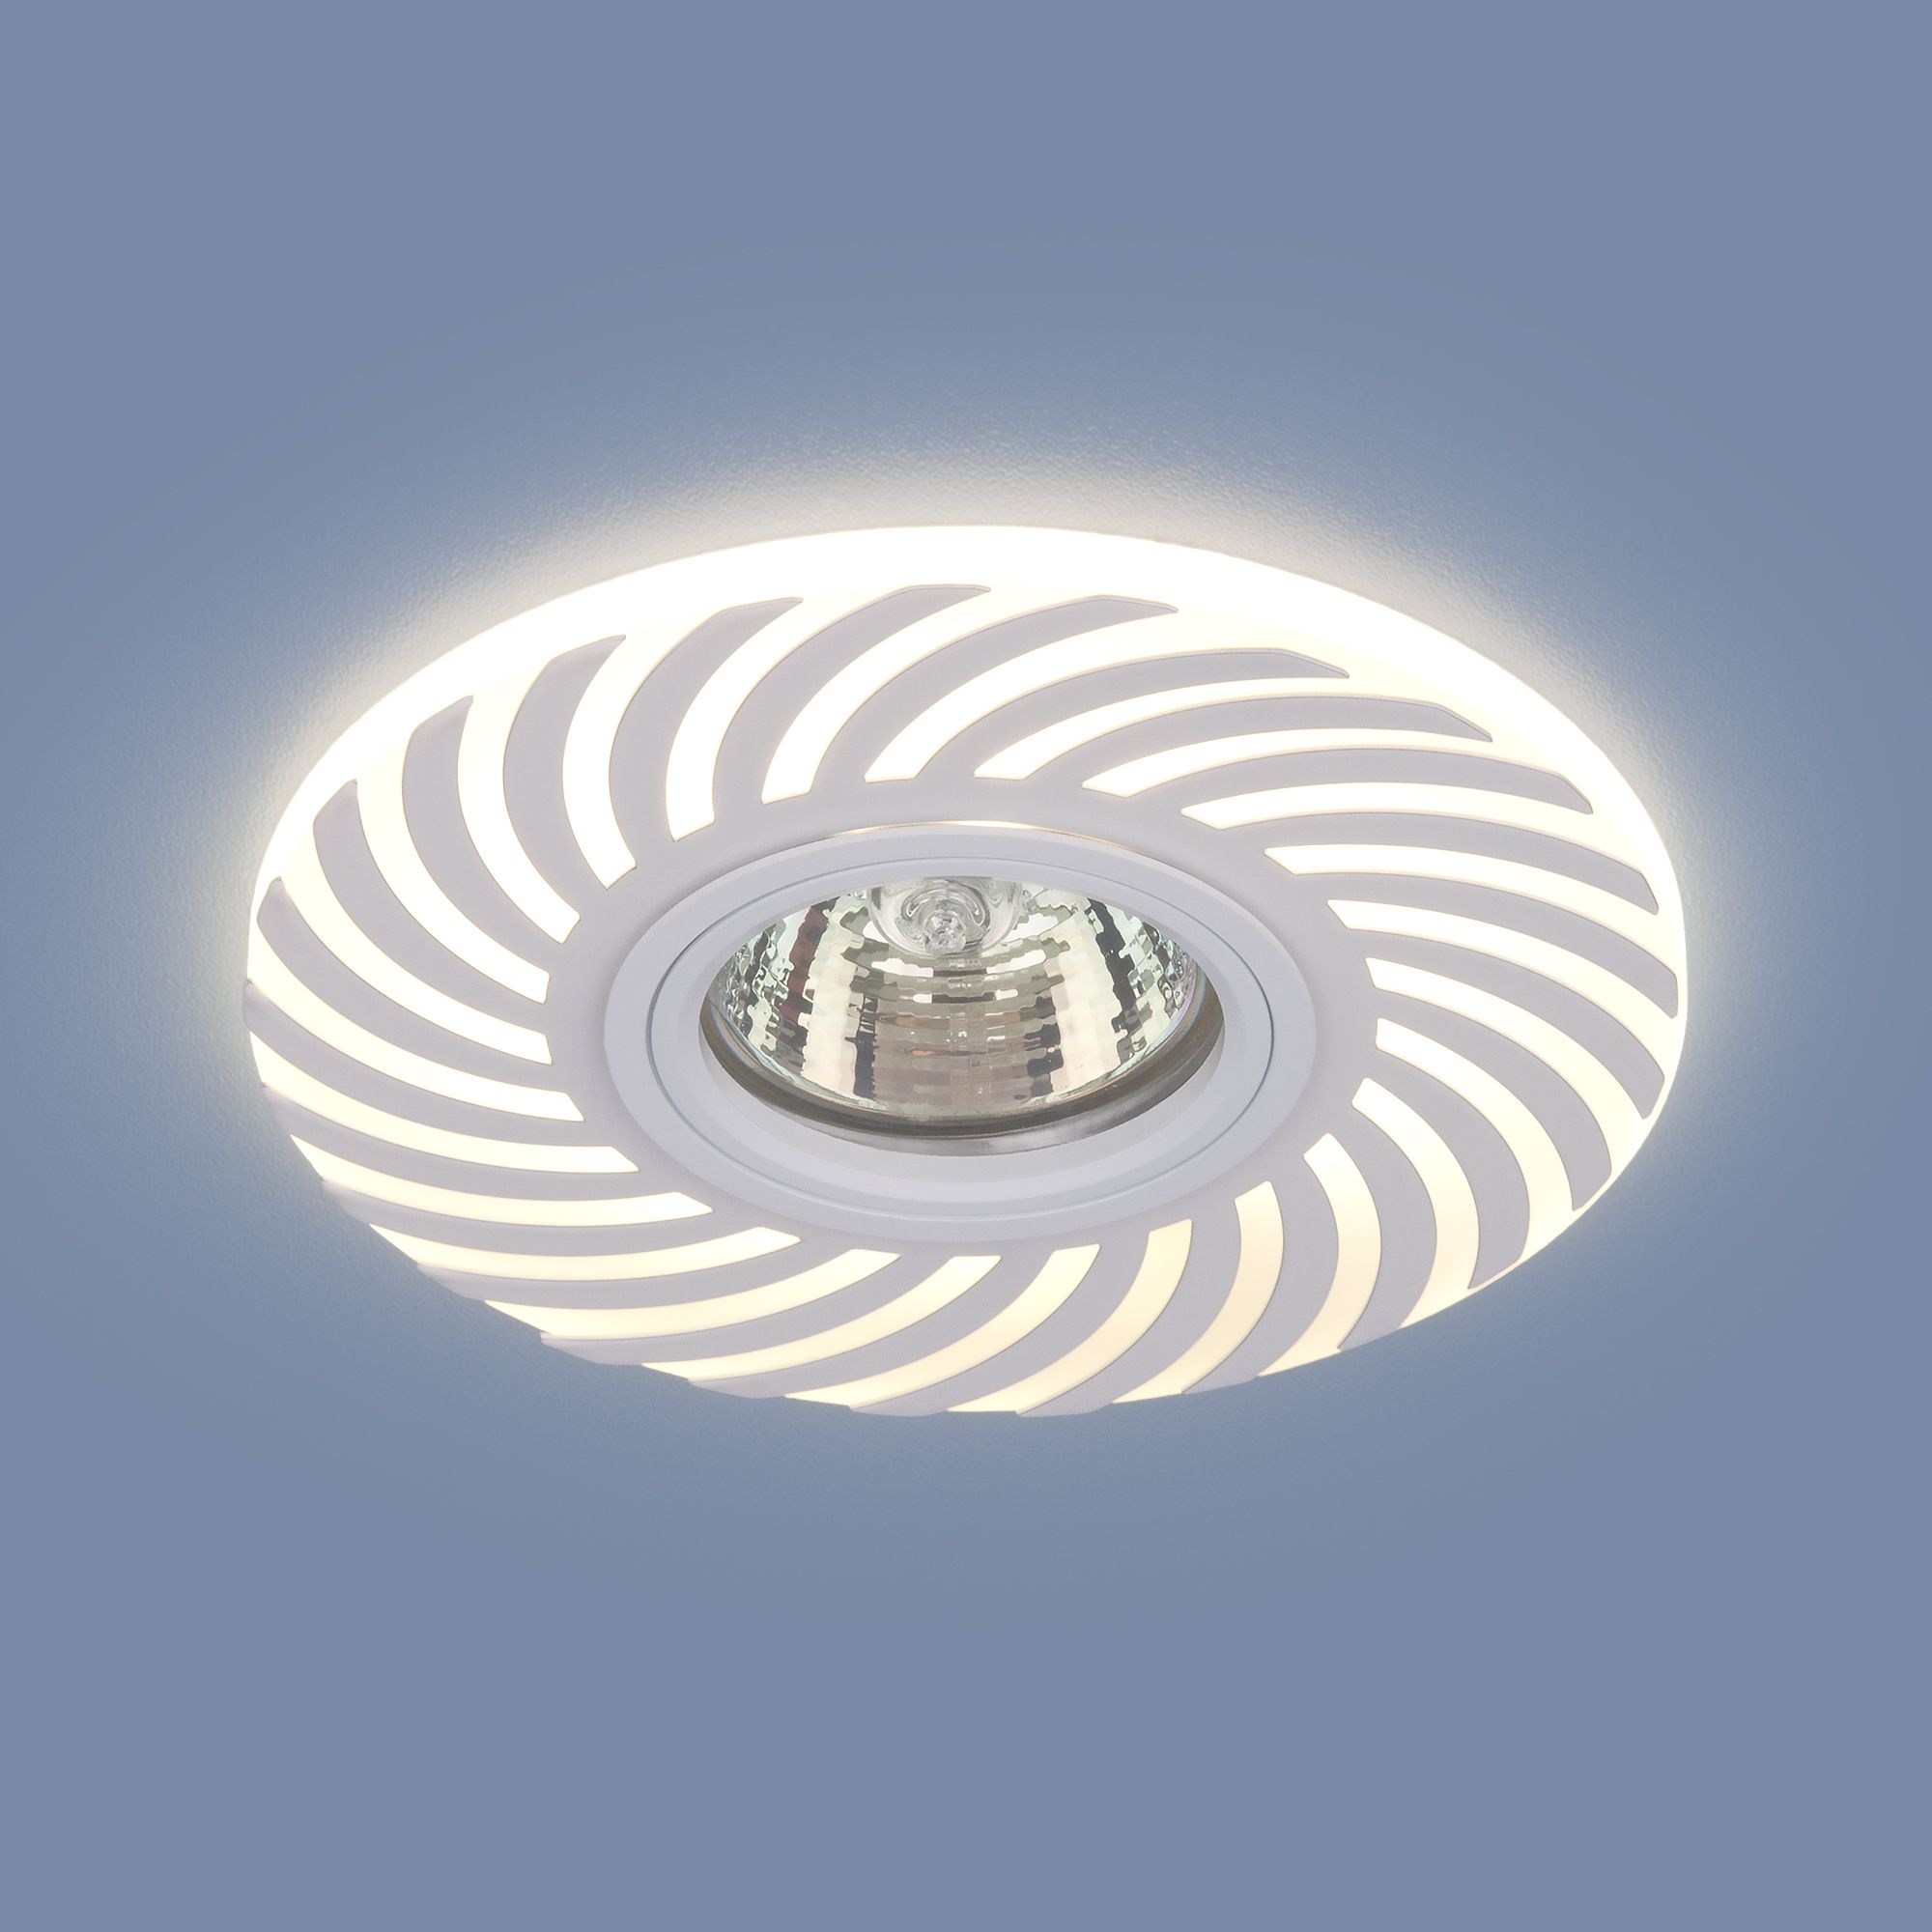 Встраиваемый точечный светильник с LED подсветкой 2215 MR16 WH белый